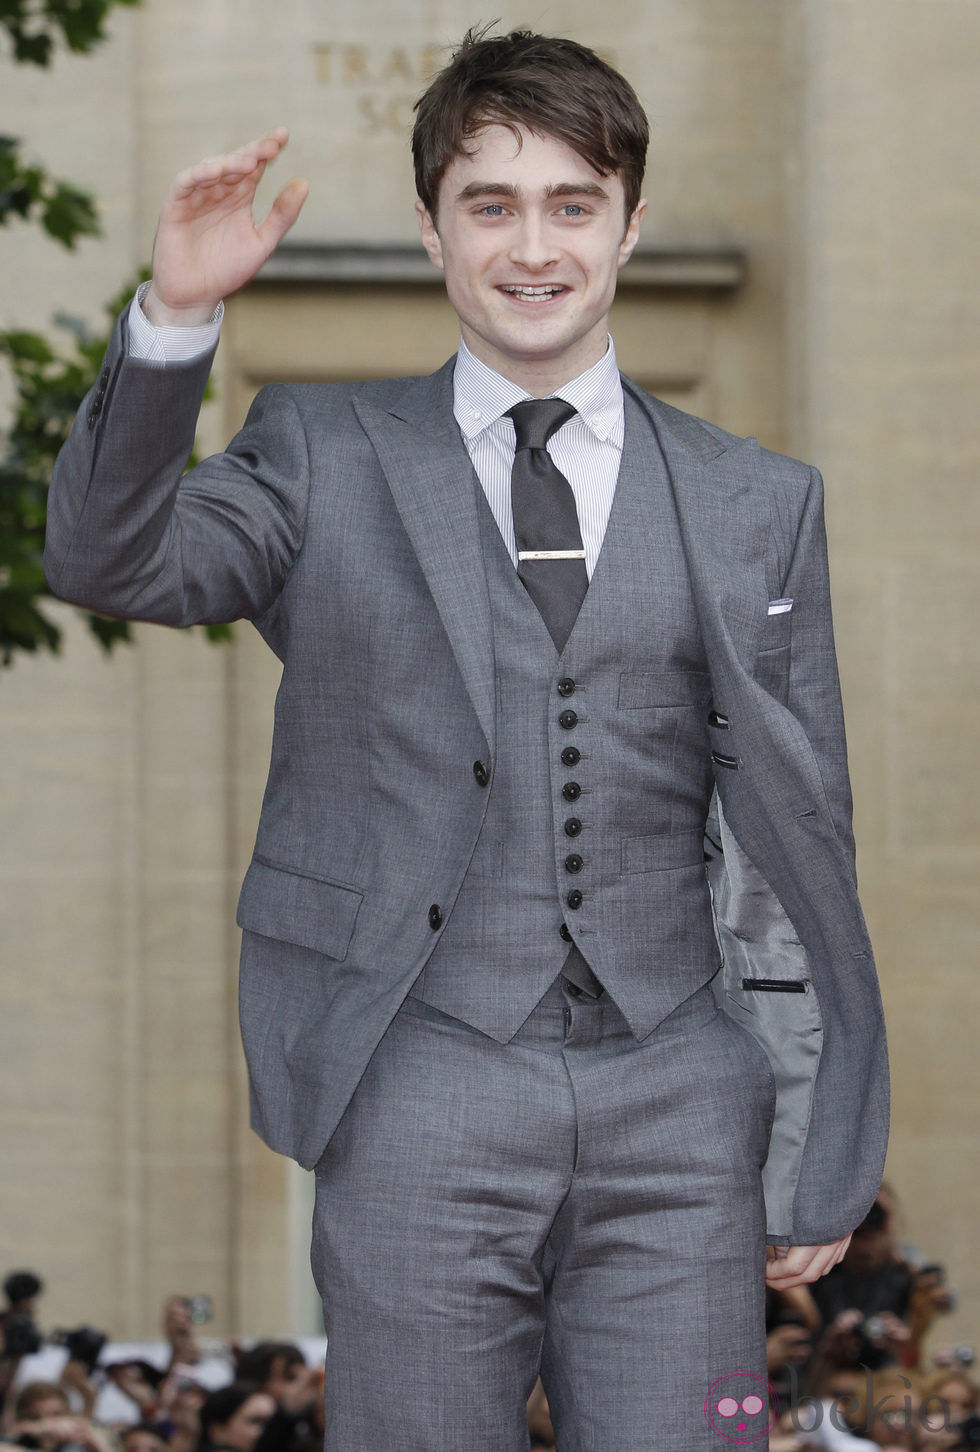 Daniel Radcliffe en el estreno de Harry Potter en Londres